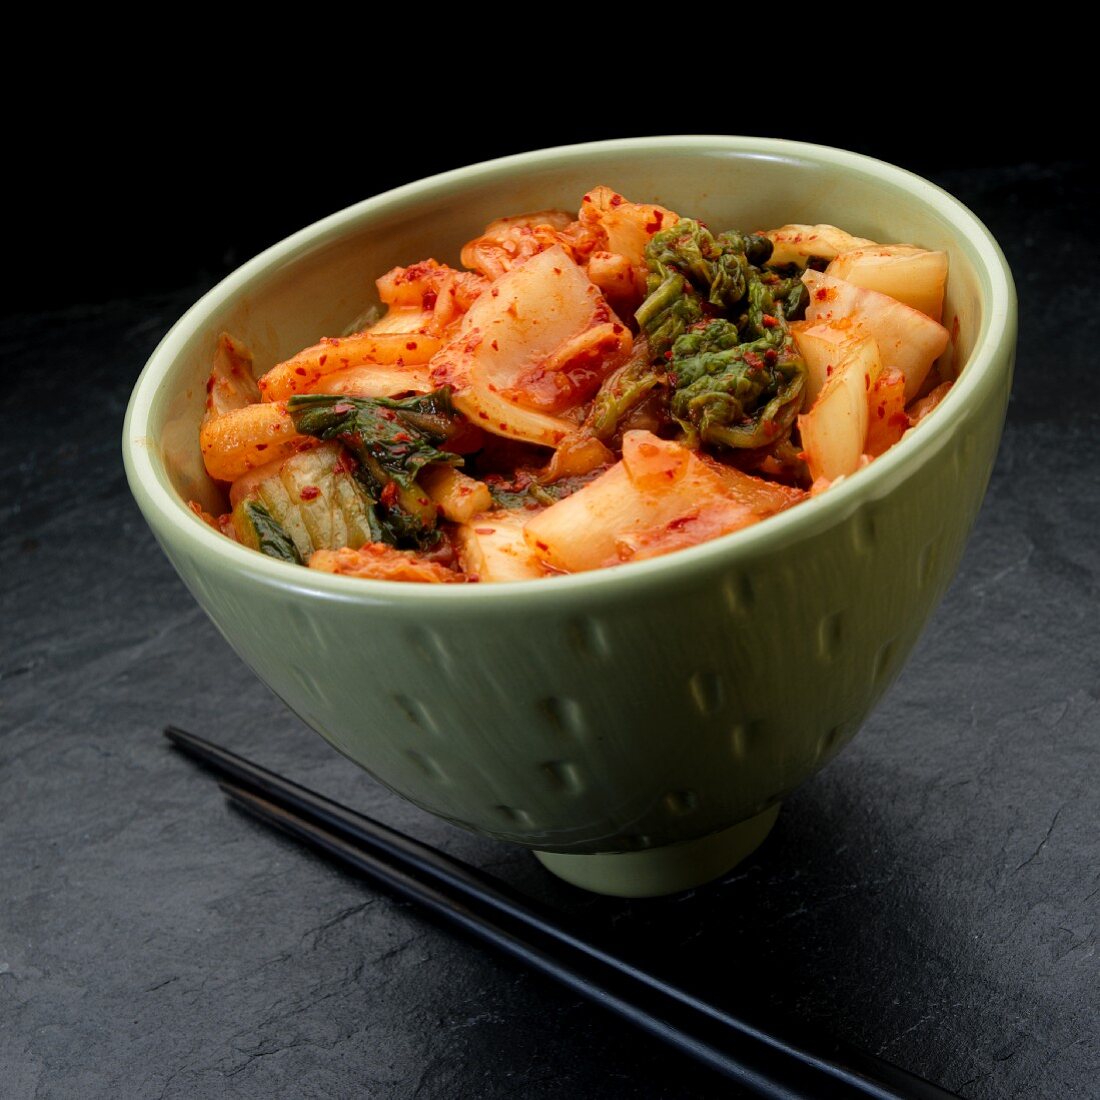 Kimchi im Essschälchen (Korea)